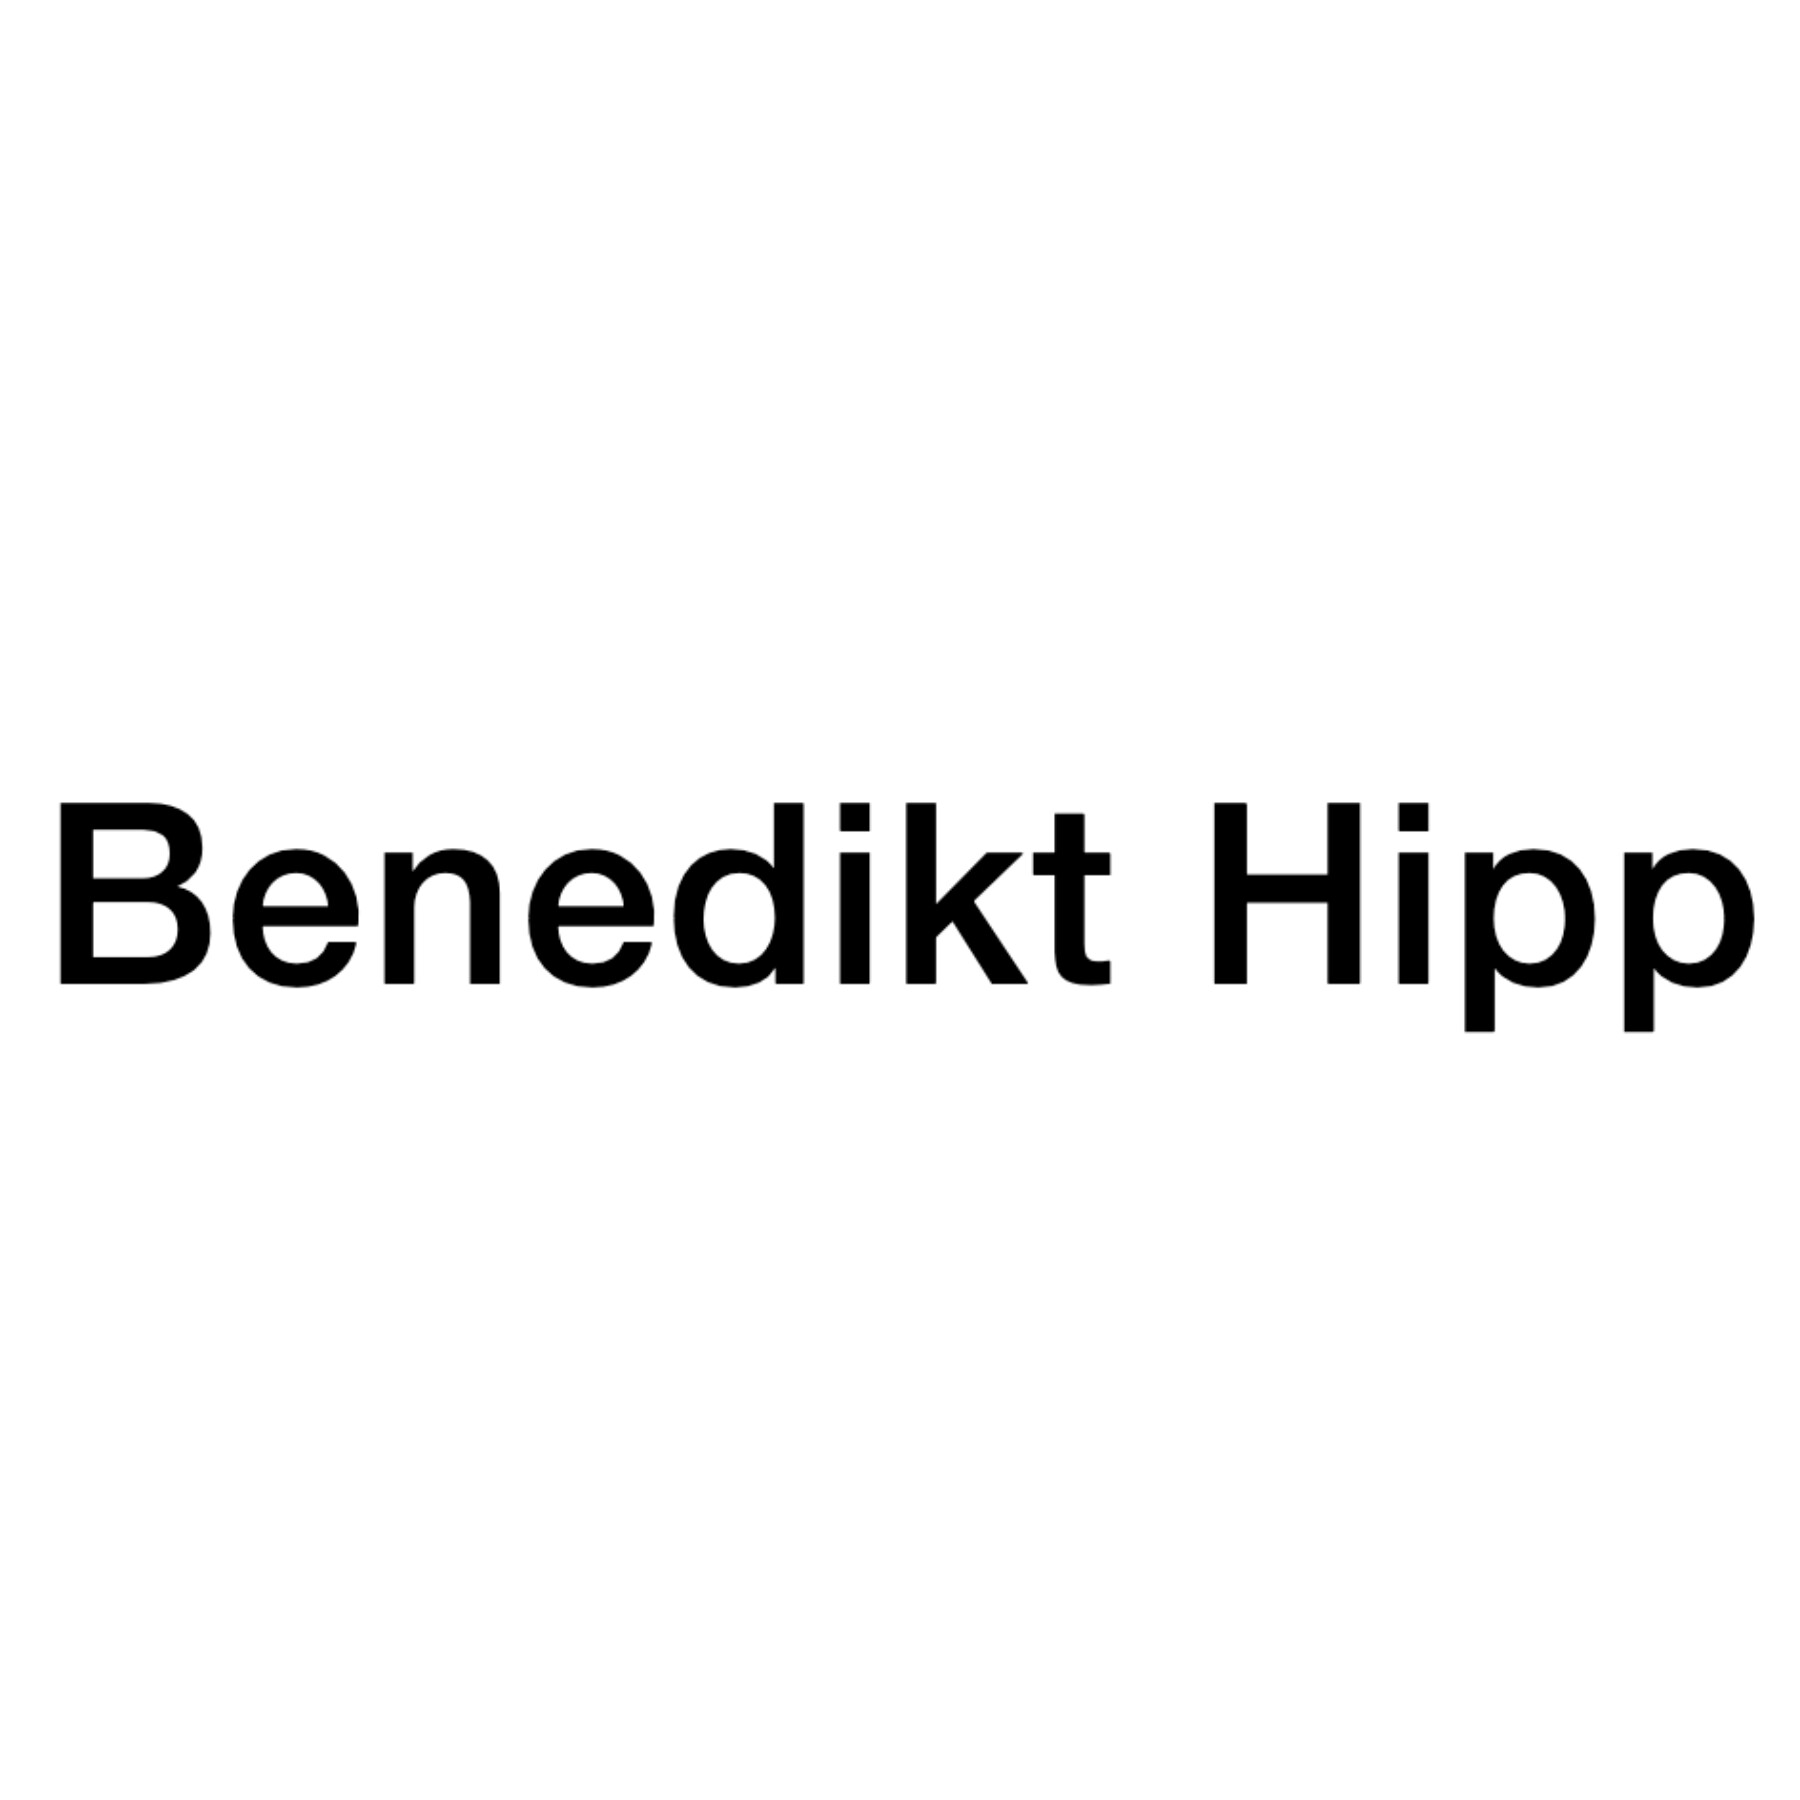 Benedikt Hipp